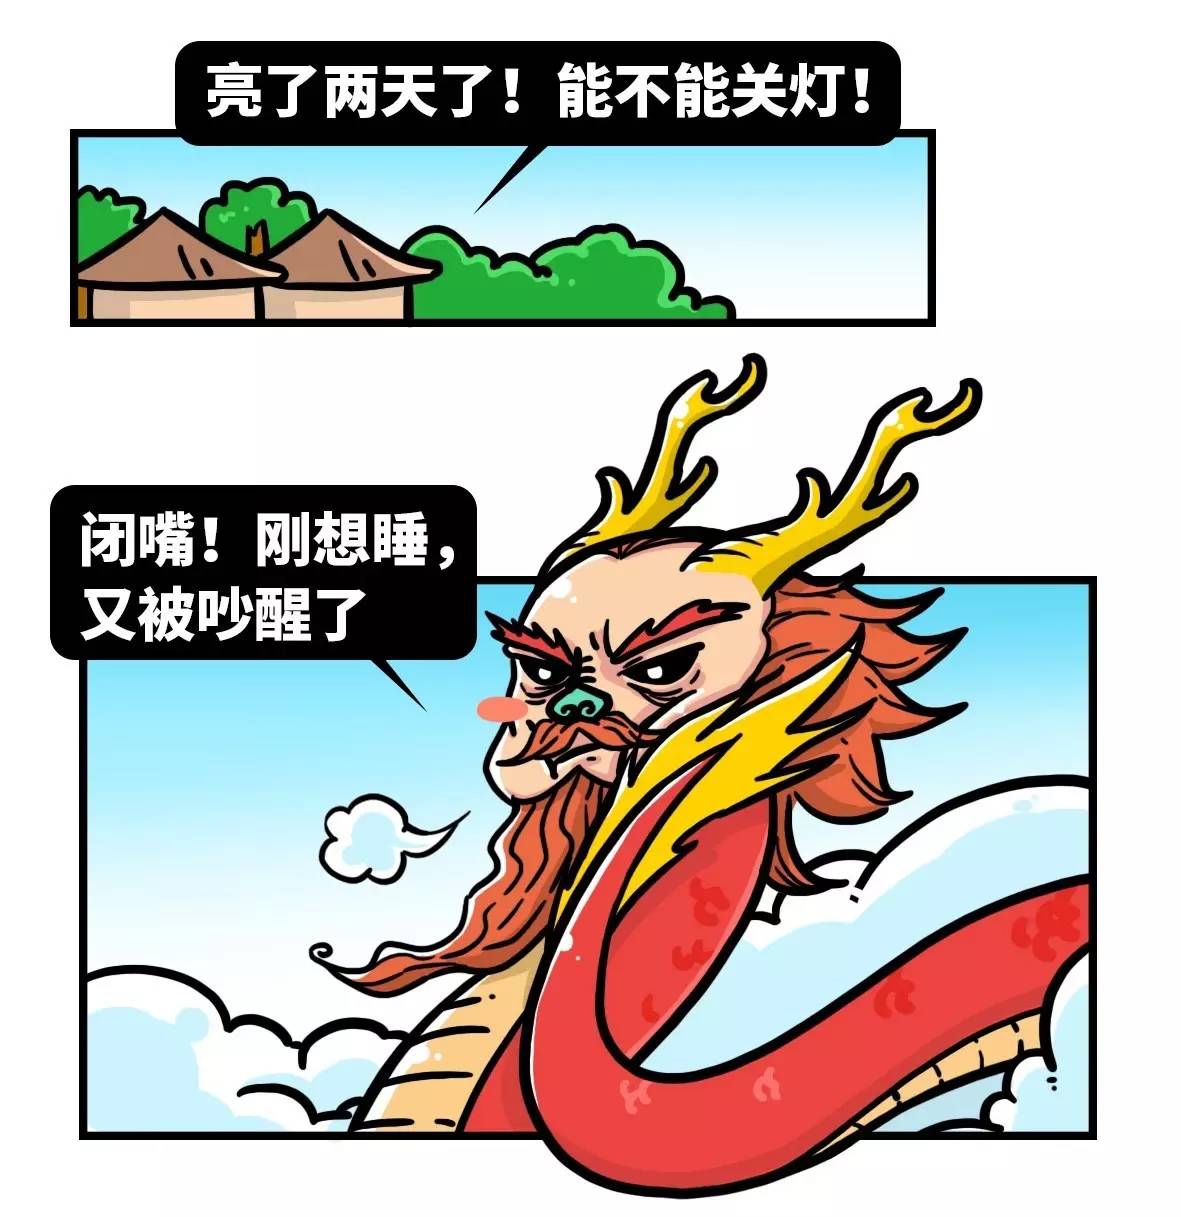 为什么中国人自称是龙的传人